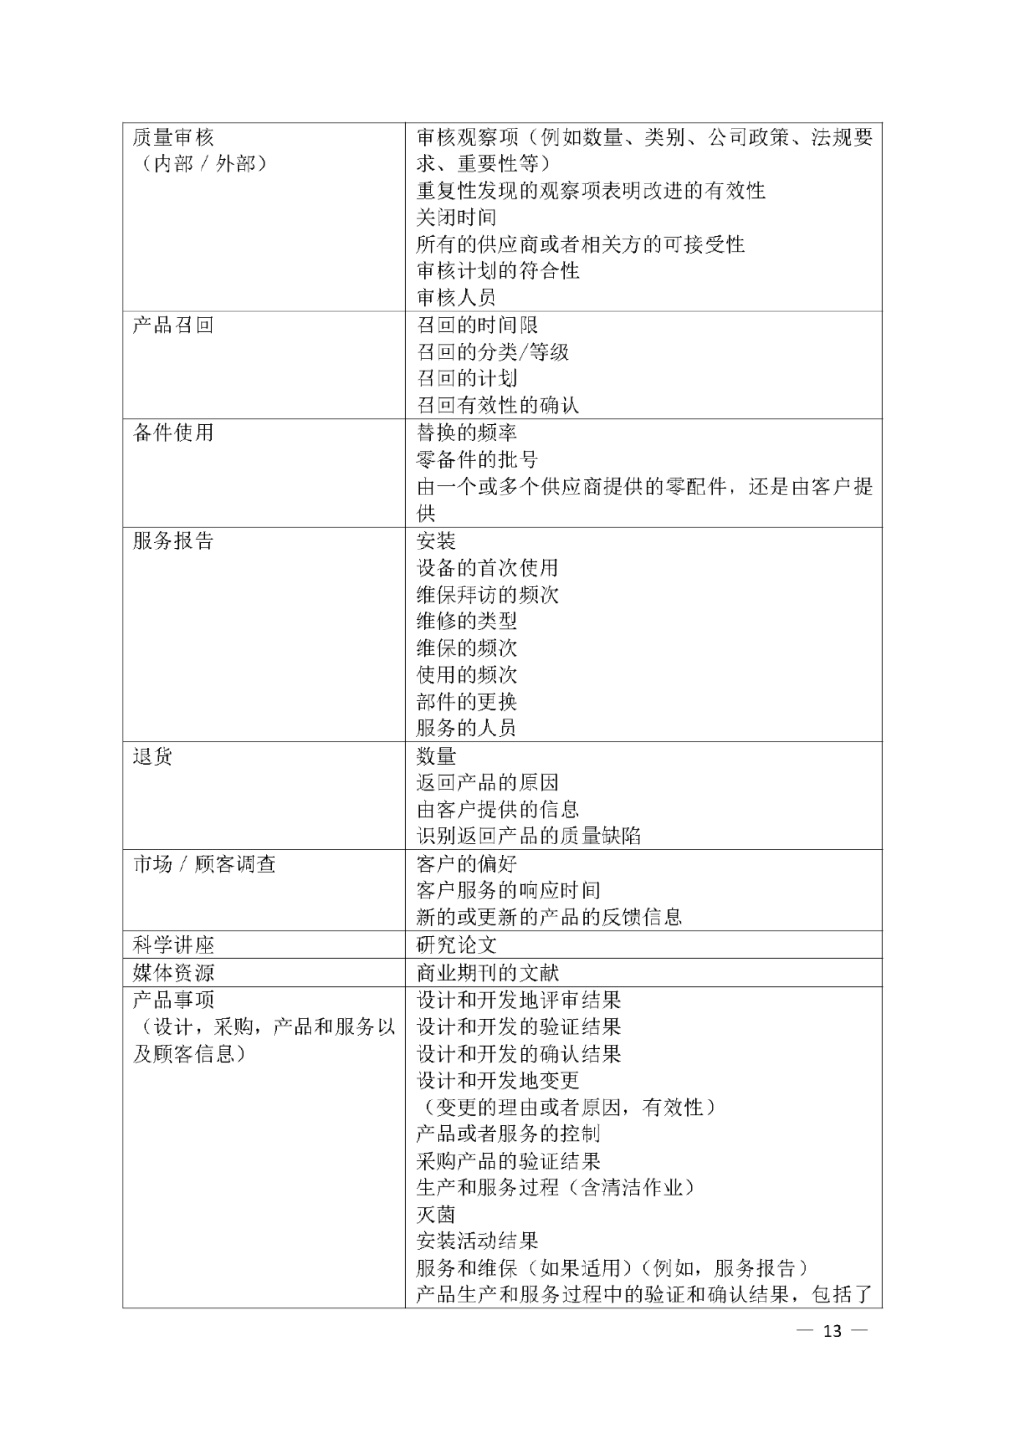 【安徽】发布医疗器械质量管理分析改进工作指南(图13)